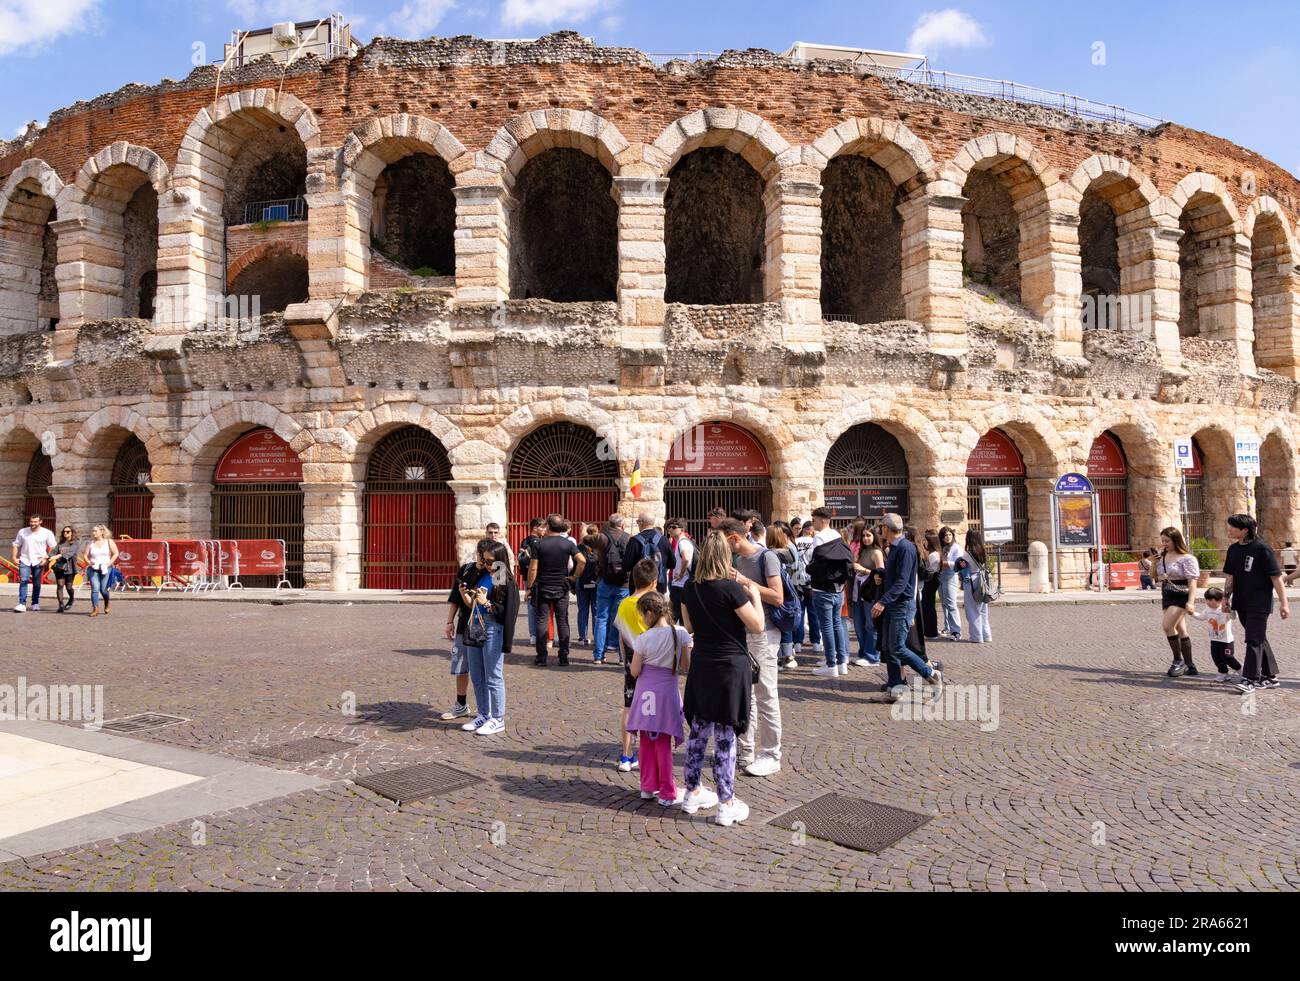 Turismo in Italia; turisti al di fuori dell'Arena di Verona, anfiteatro romano del i secolo; in primavera, sole, Piazza Bra, Verona, Veneto, Italia Europa Foto Stock